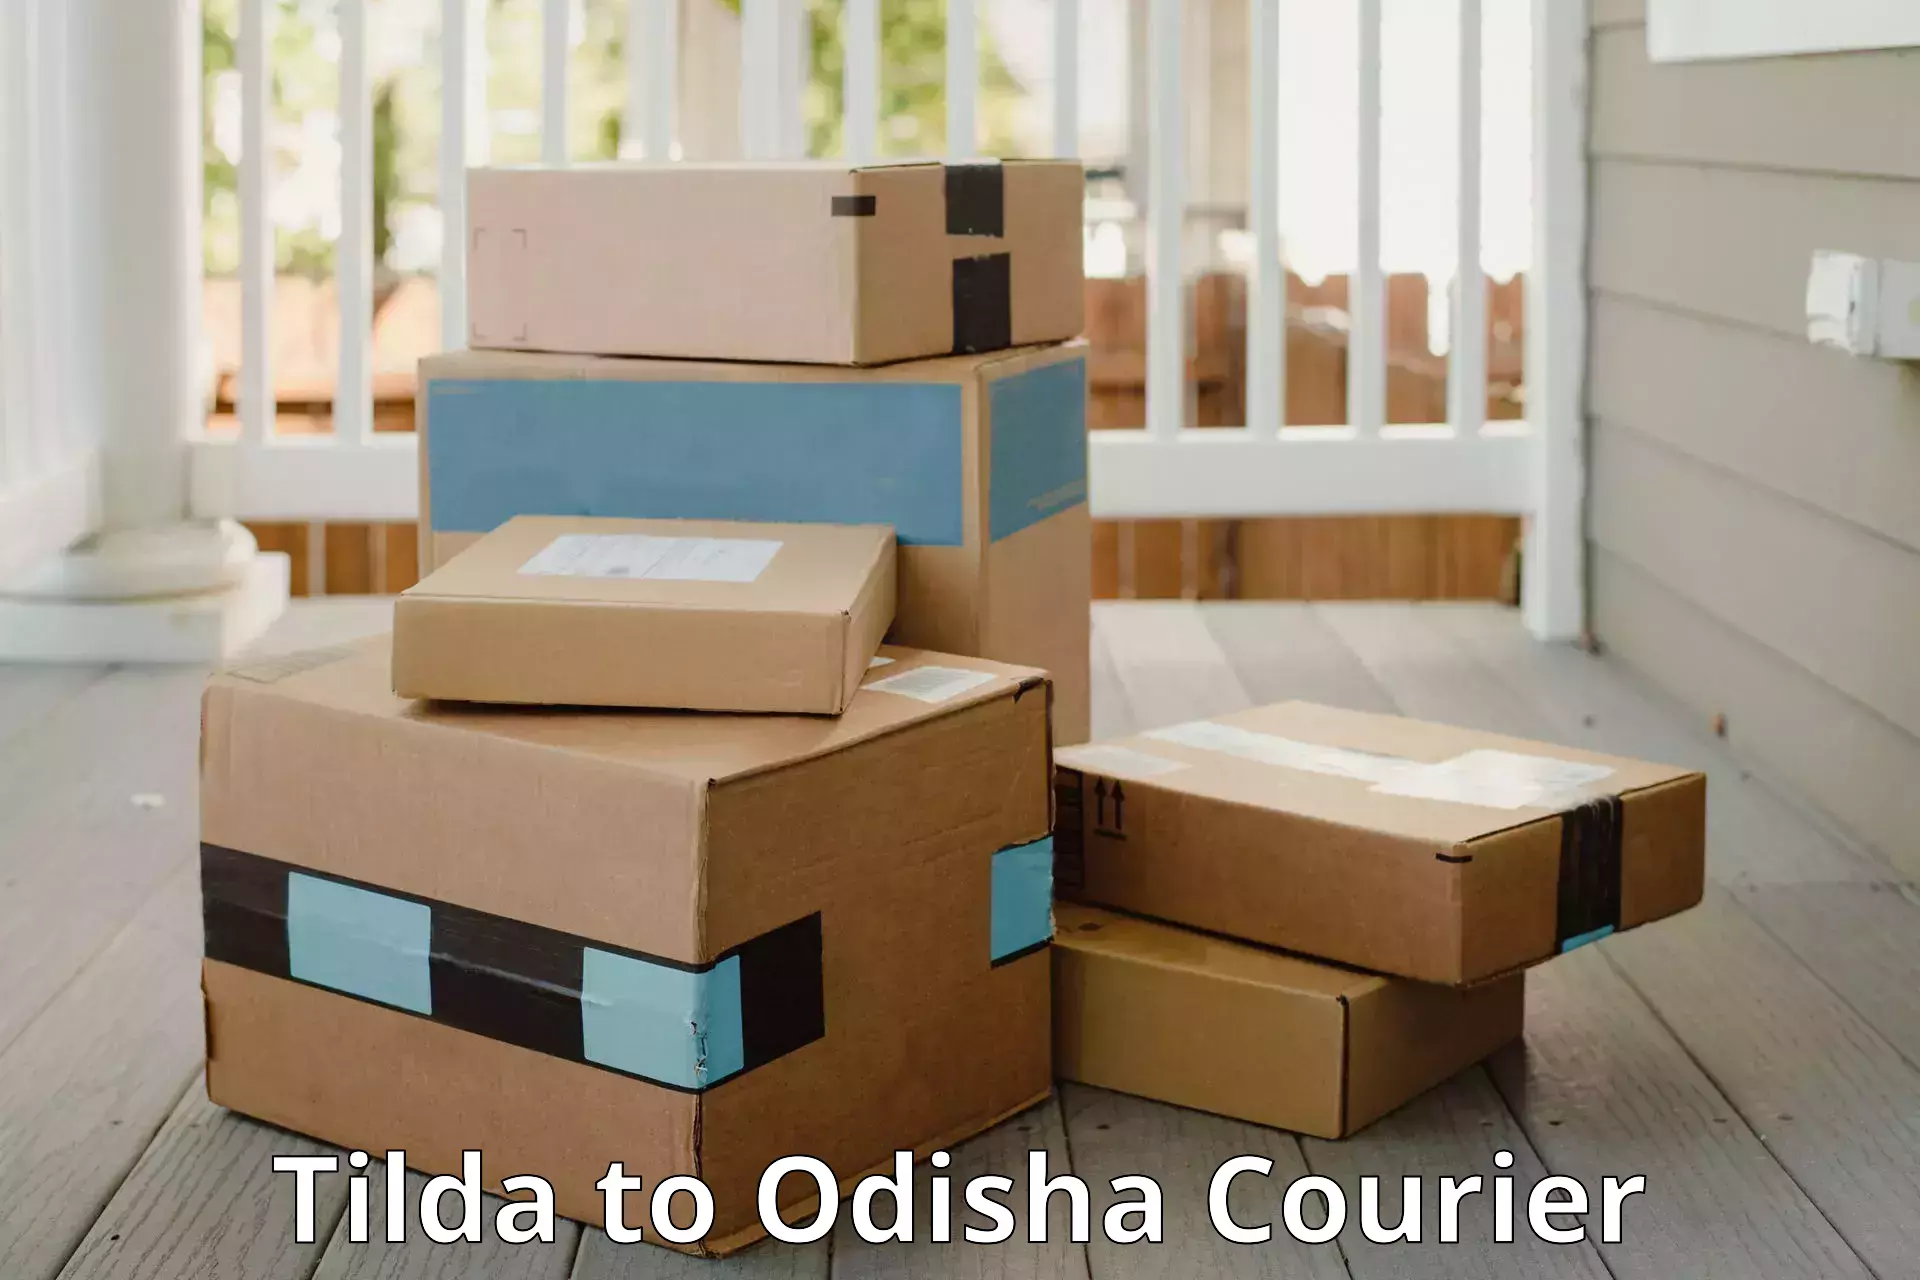 Luggage delivery news Tilda to Turanga